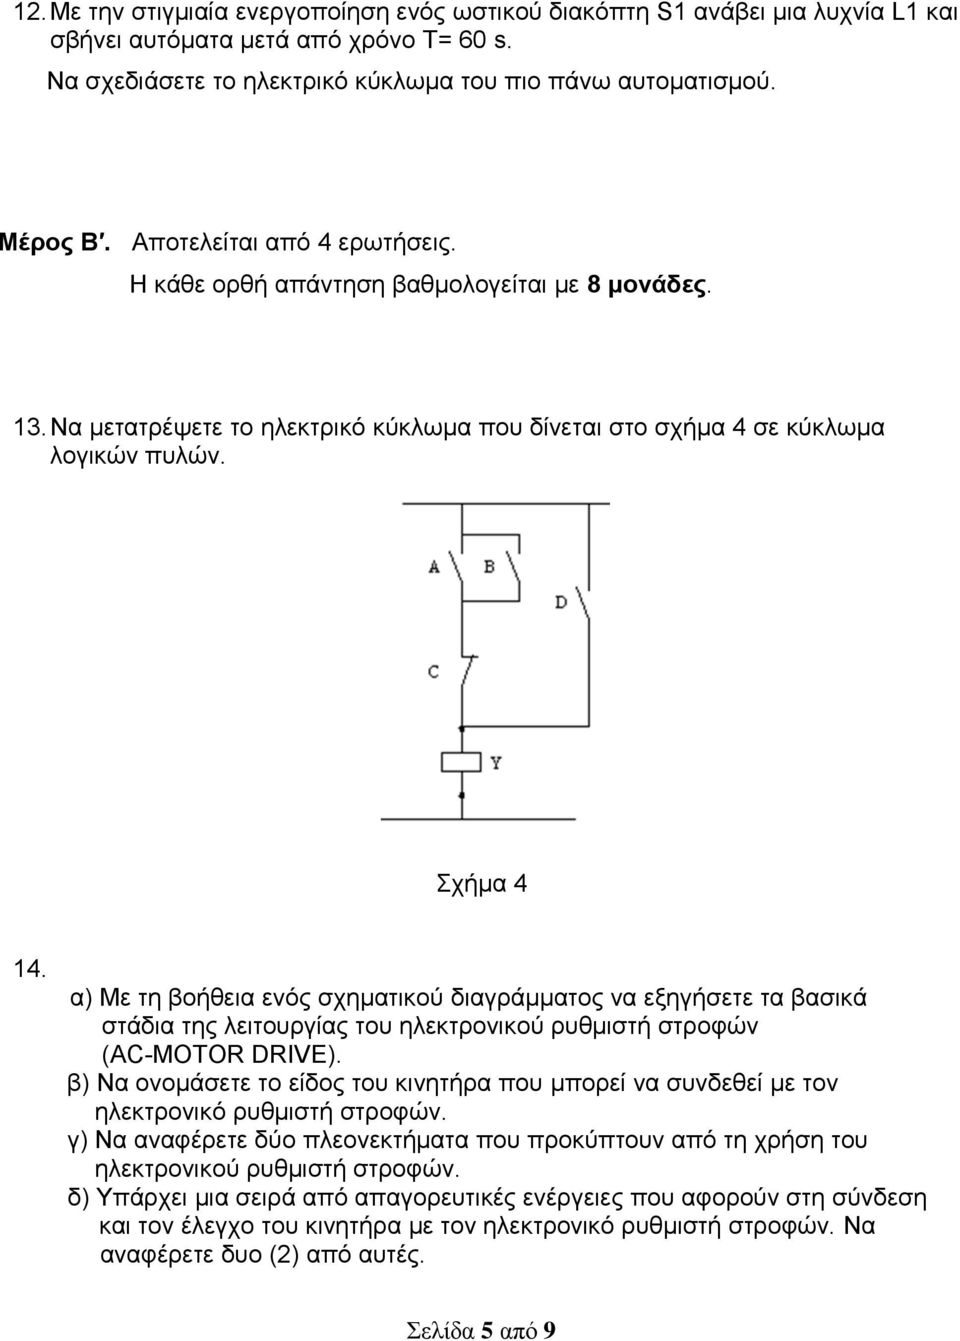 α) Με τη βοήθεια ενός σχηματικού διαγράμματος να εξηγήσετε τα βασικά στάδια της λειτουργίας του ηλεκτρονικού ρυθμιστή στροφών (AC-MOTOR DRIVE).